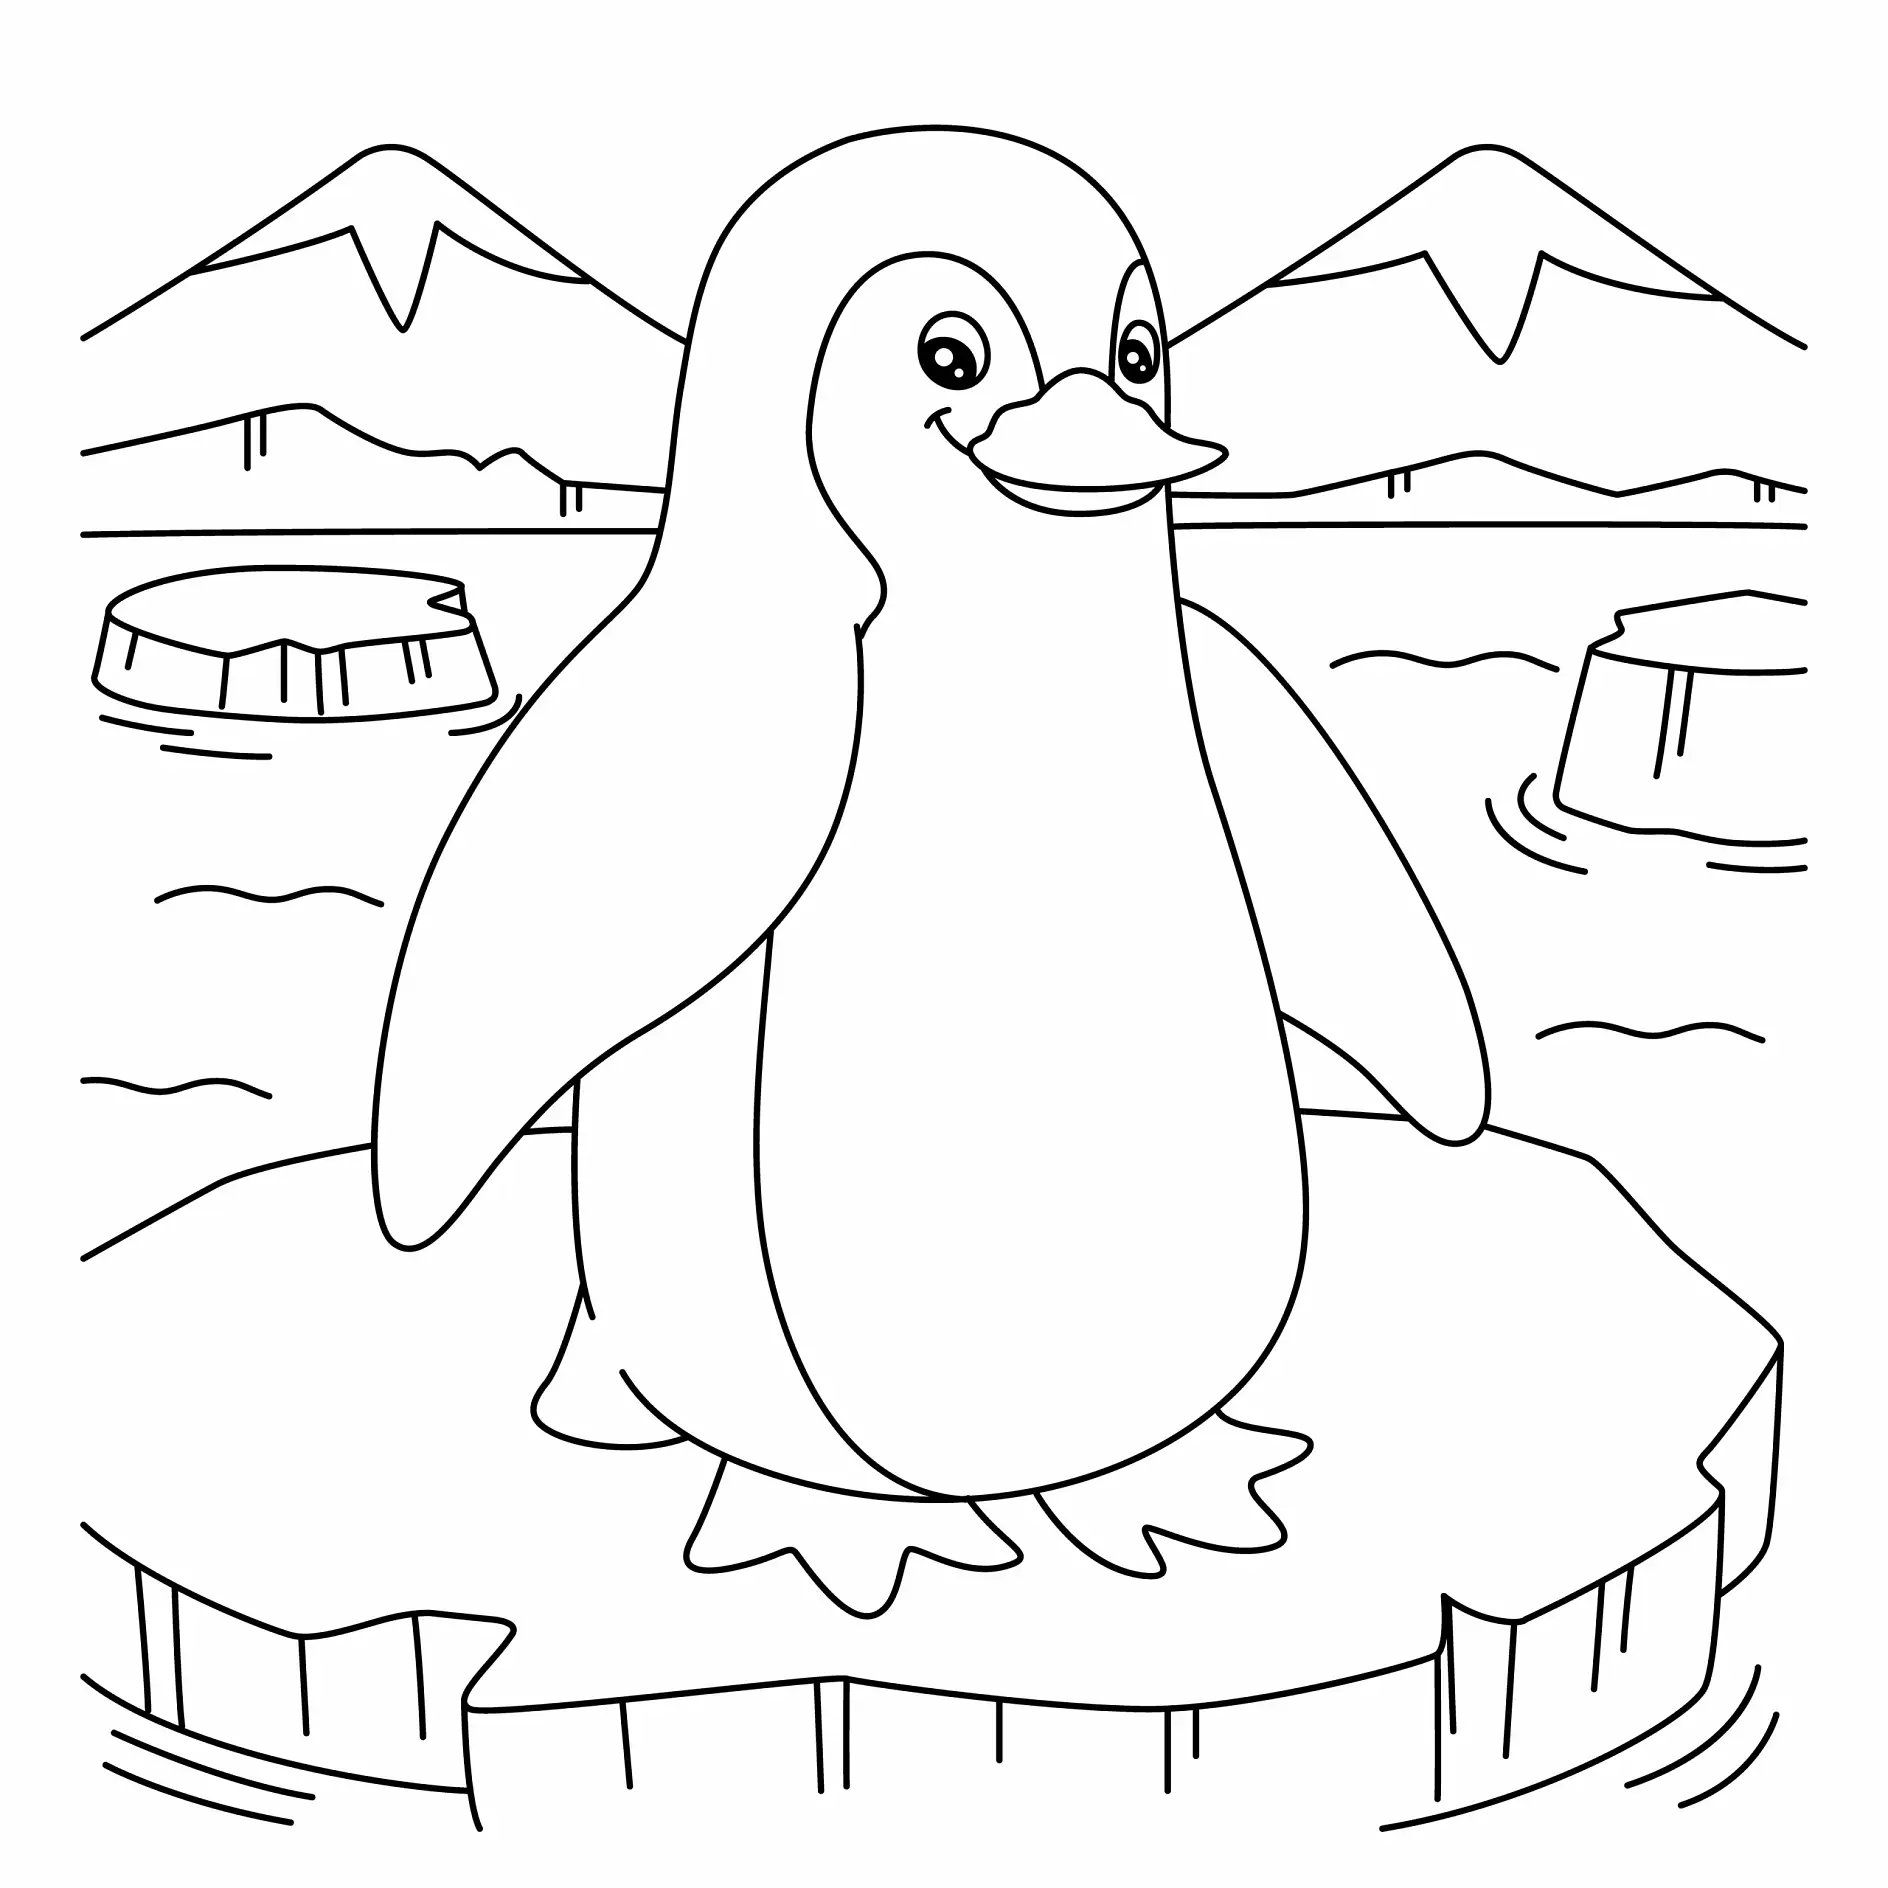 Ausmalbild Pinguin steht auf Eisscholle in arktischer Landschaft